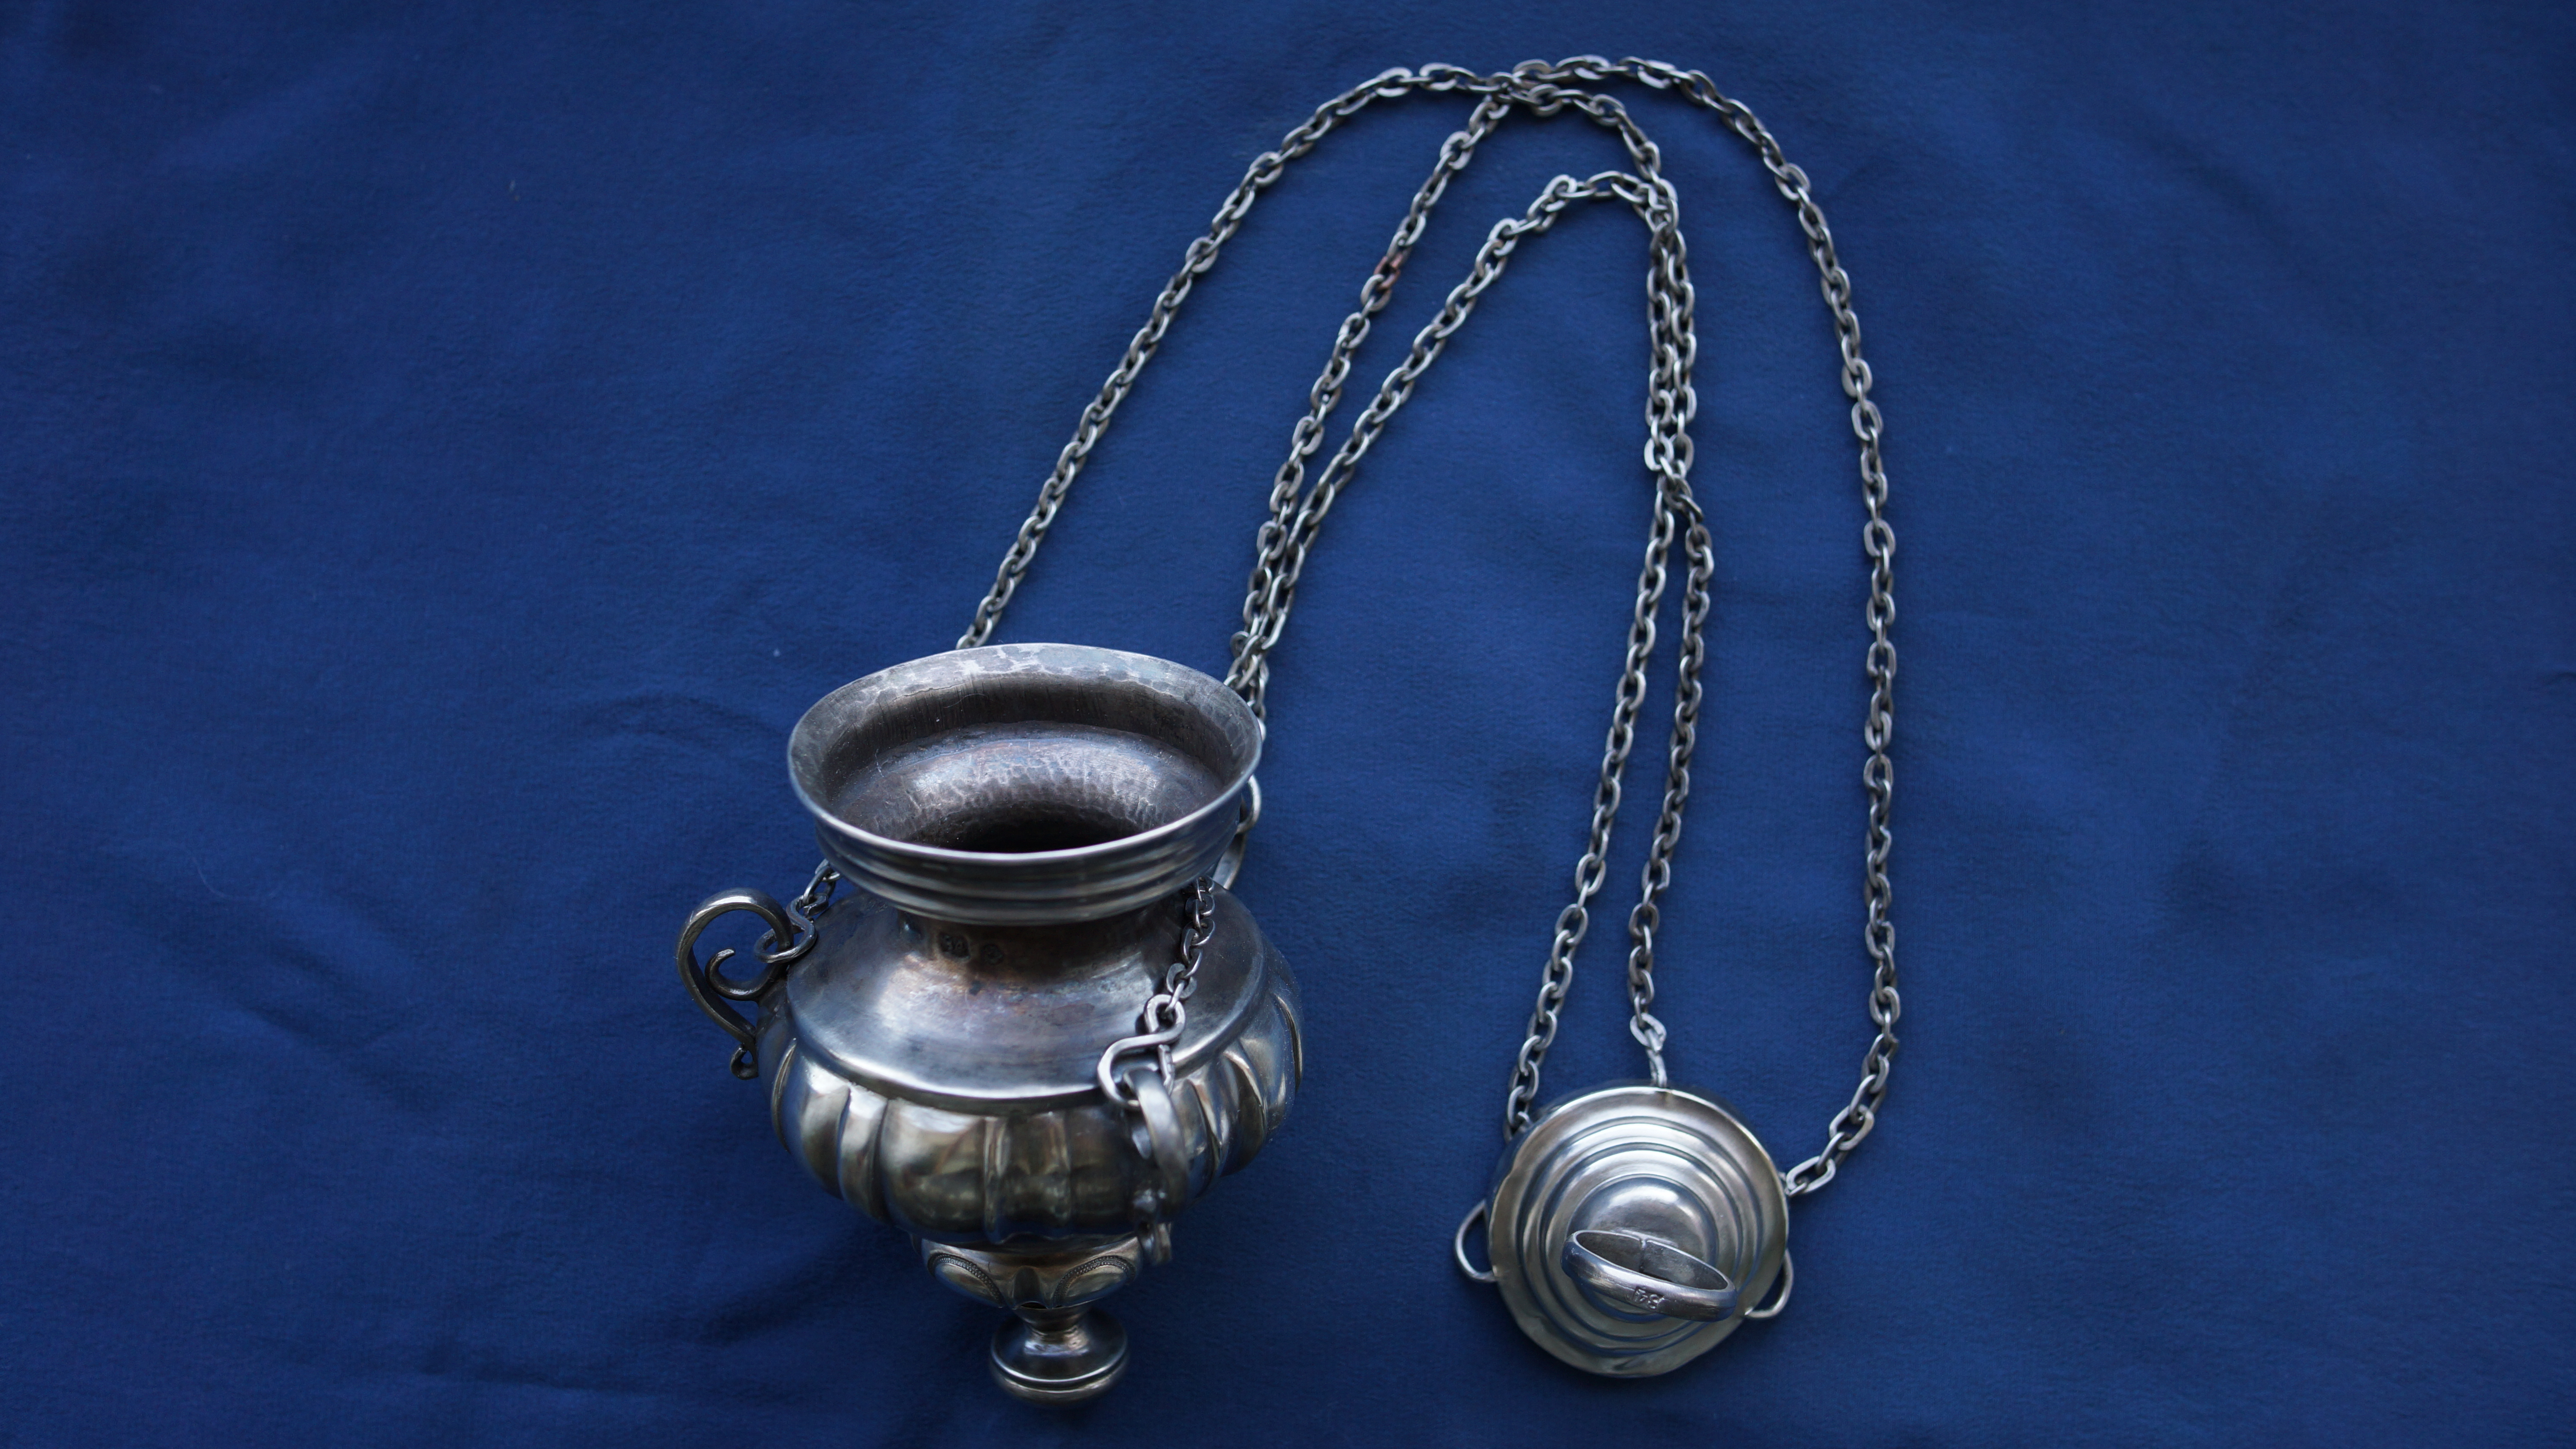 Лампада подвесная серебряная в стиле Ампир. Москва,  начало 1860-х гг.